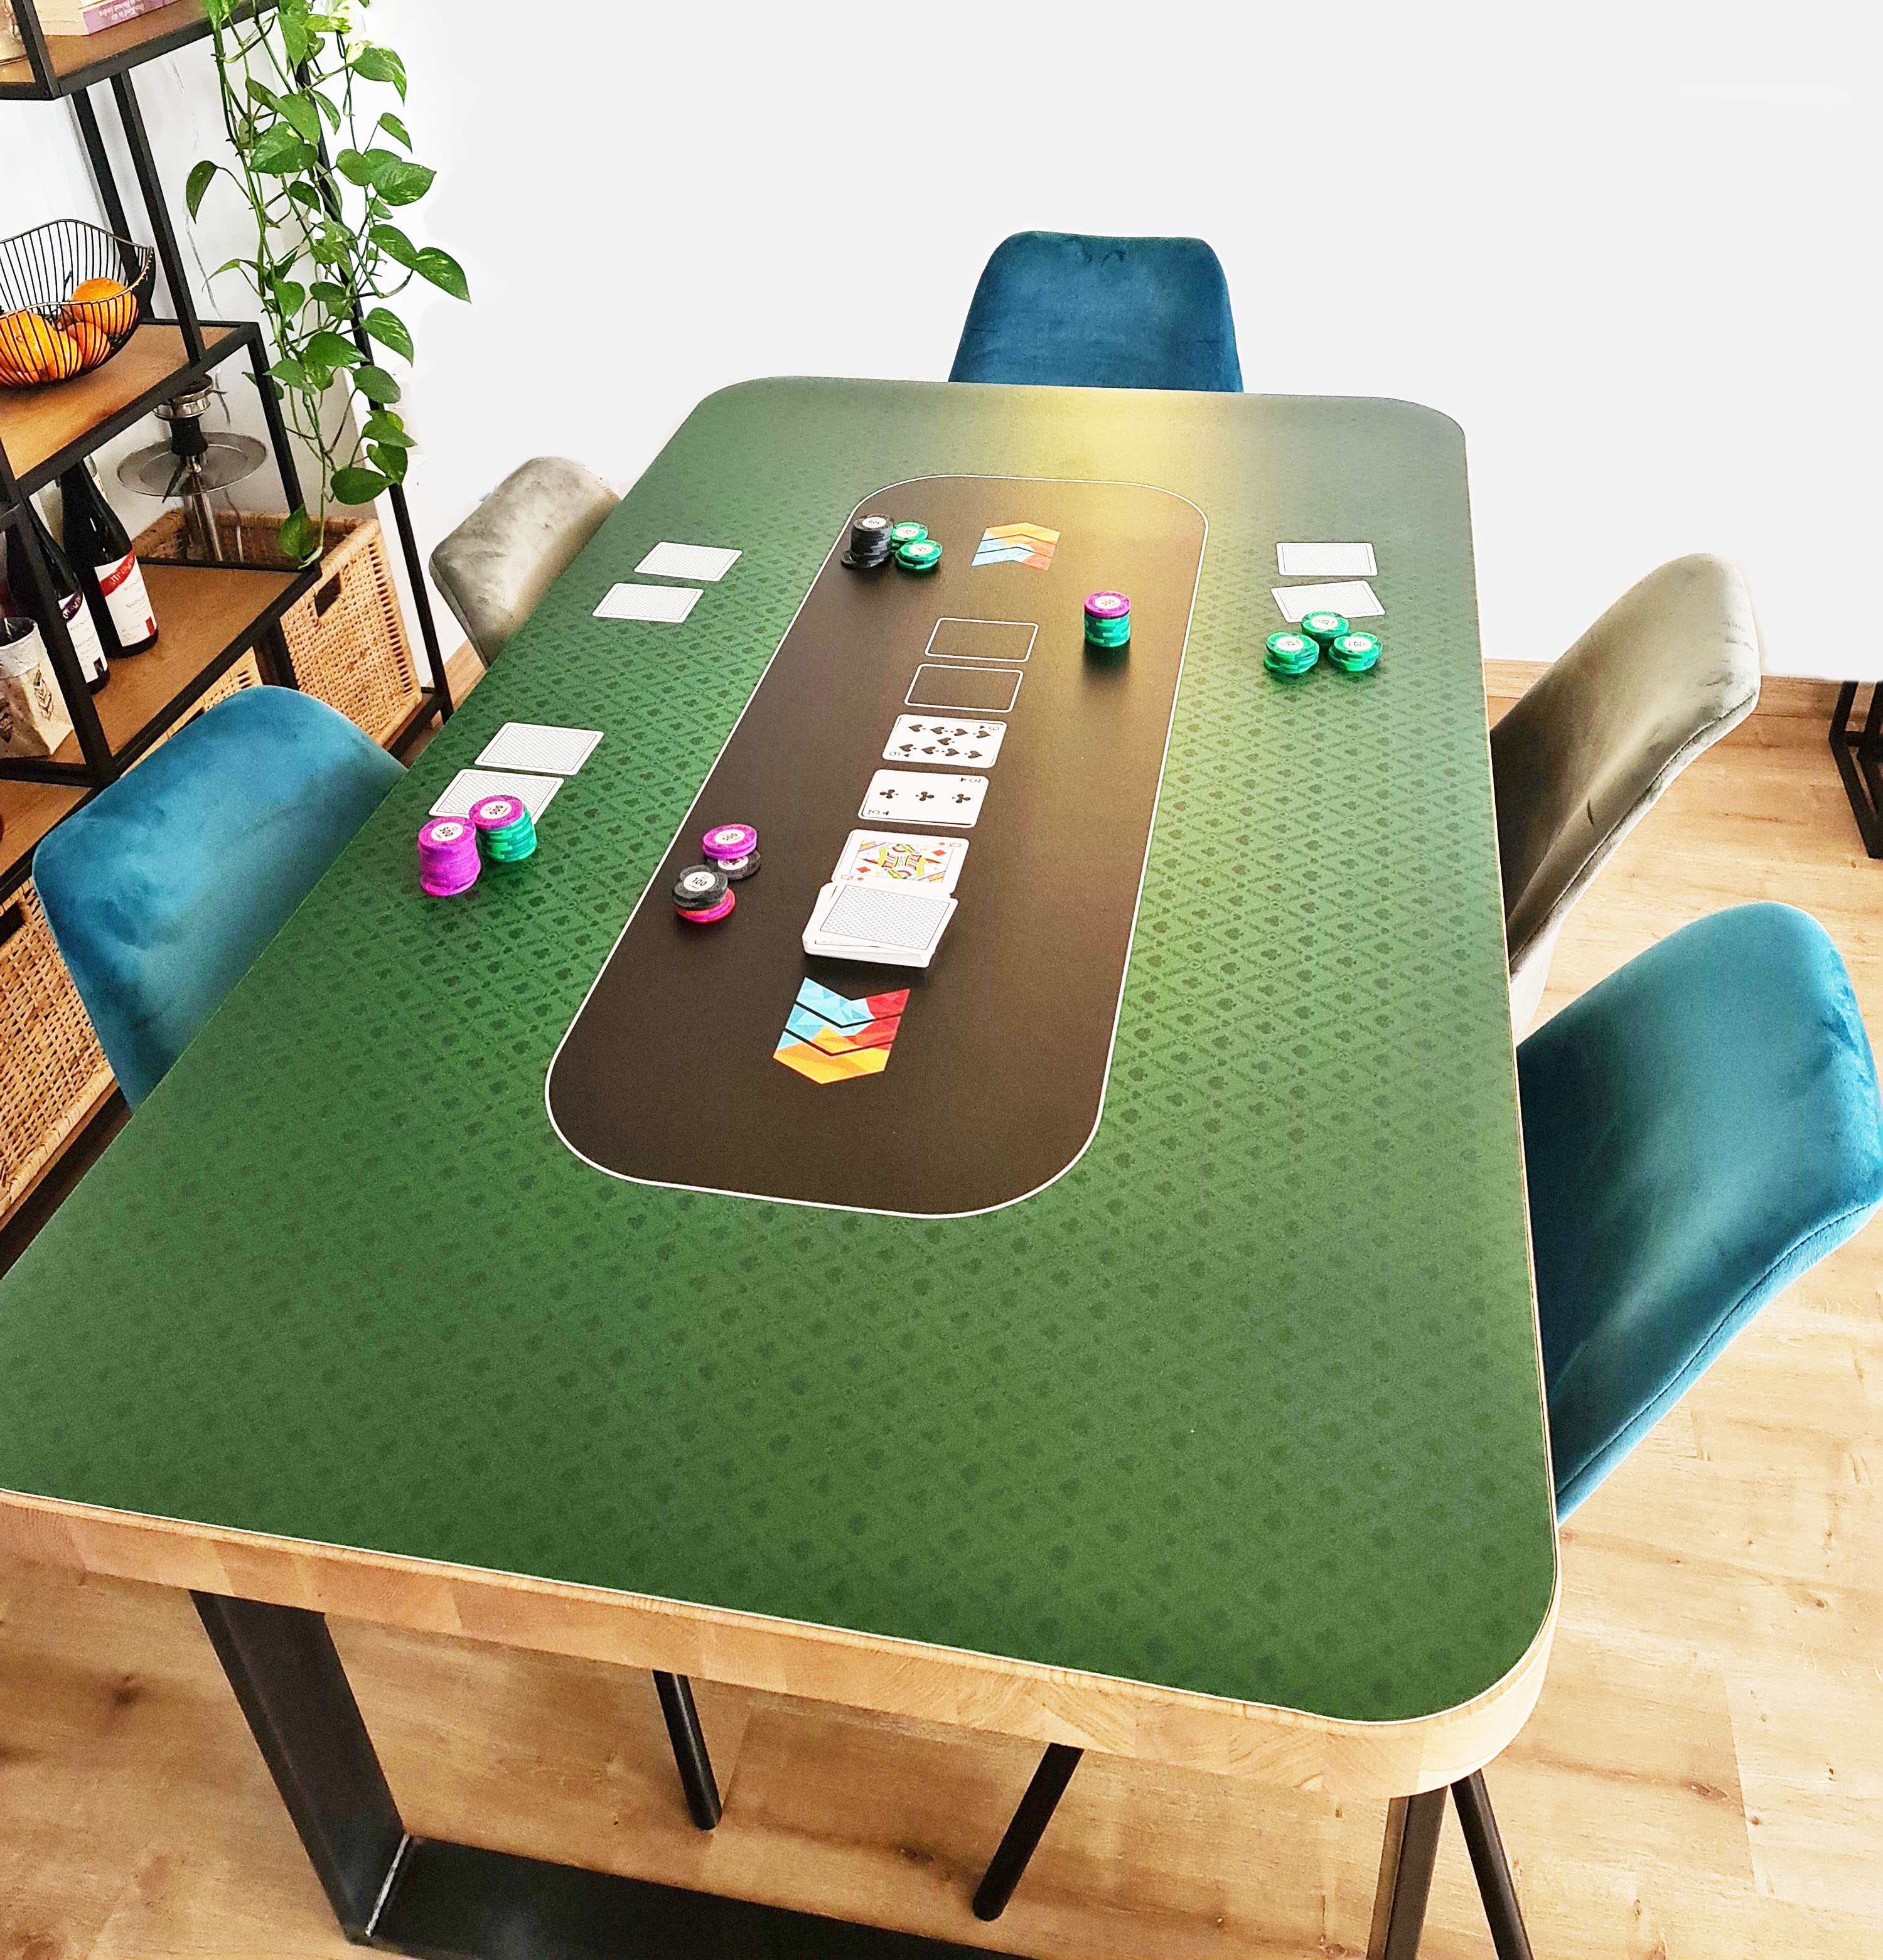 Pokertischauflage nach Maß und Deinem Design! Jetzt gestalten!